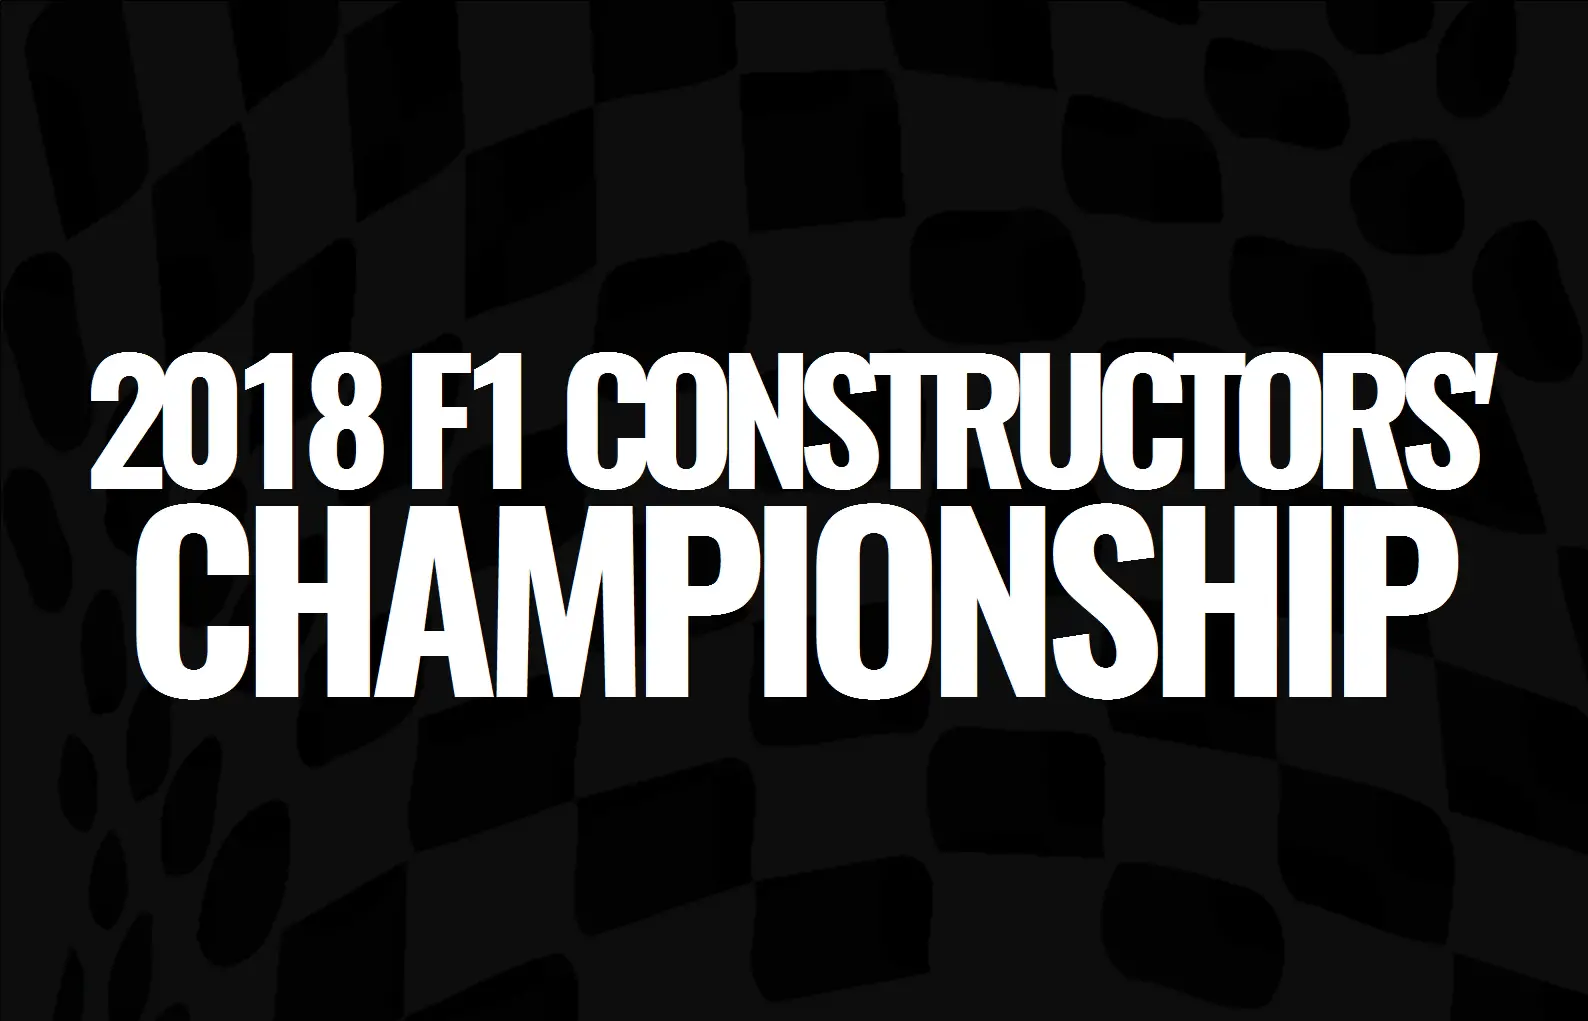 f1 constructors championship